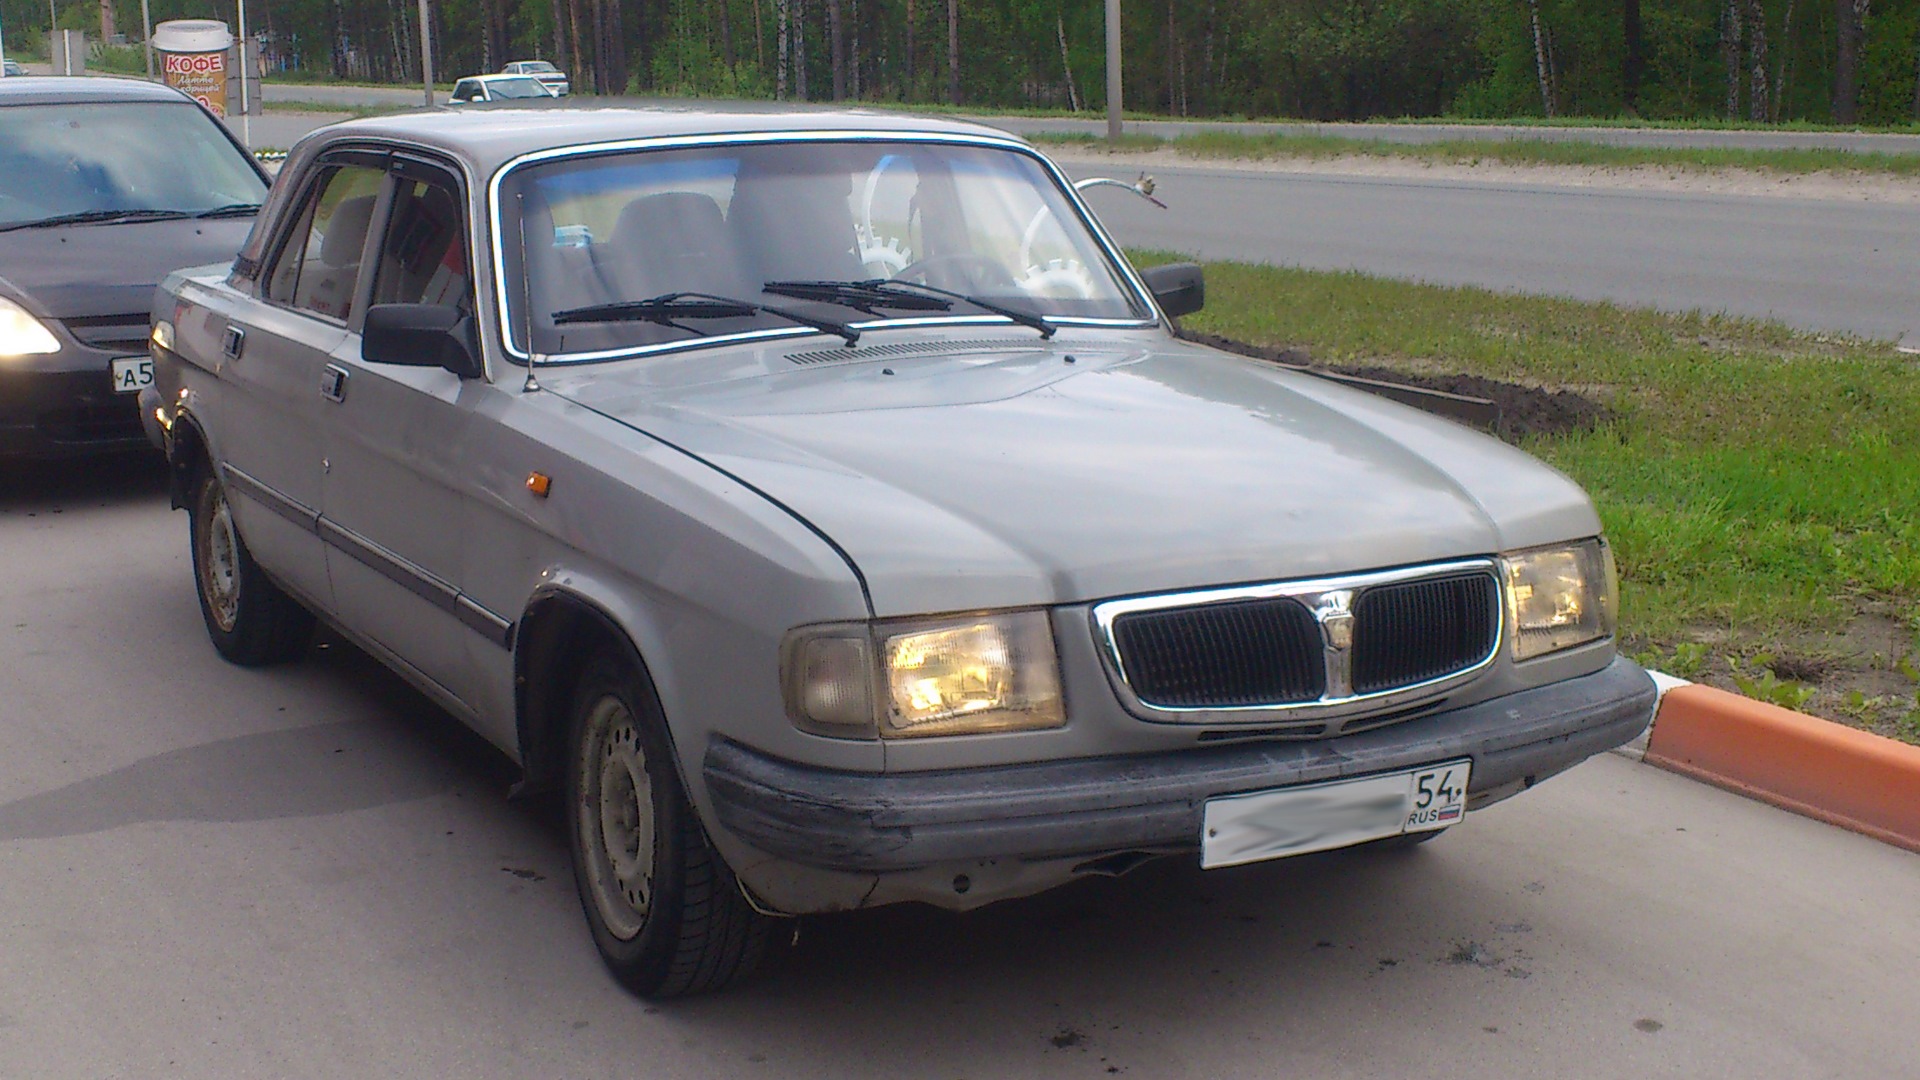 Газ 3110 б у. ГАЗ 3110 Волга 1998. ГАЗ 3110 серая. ГАЗ 3110 2.4. ГАЗ 3110 1998 серый.